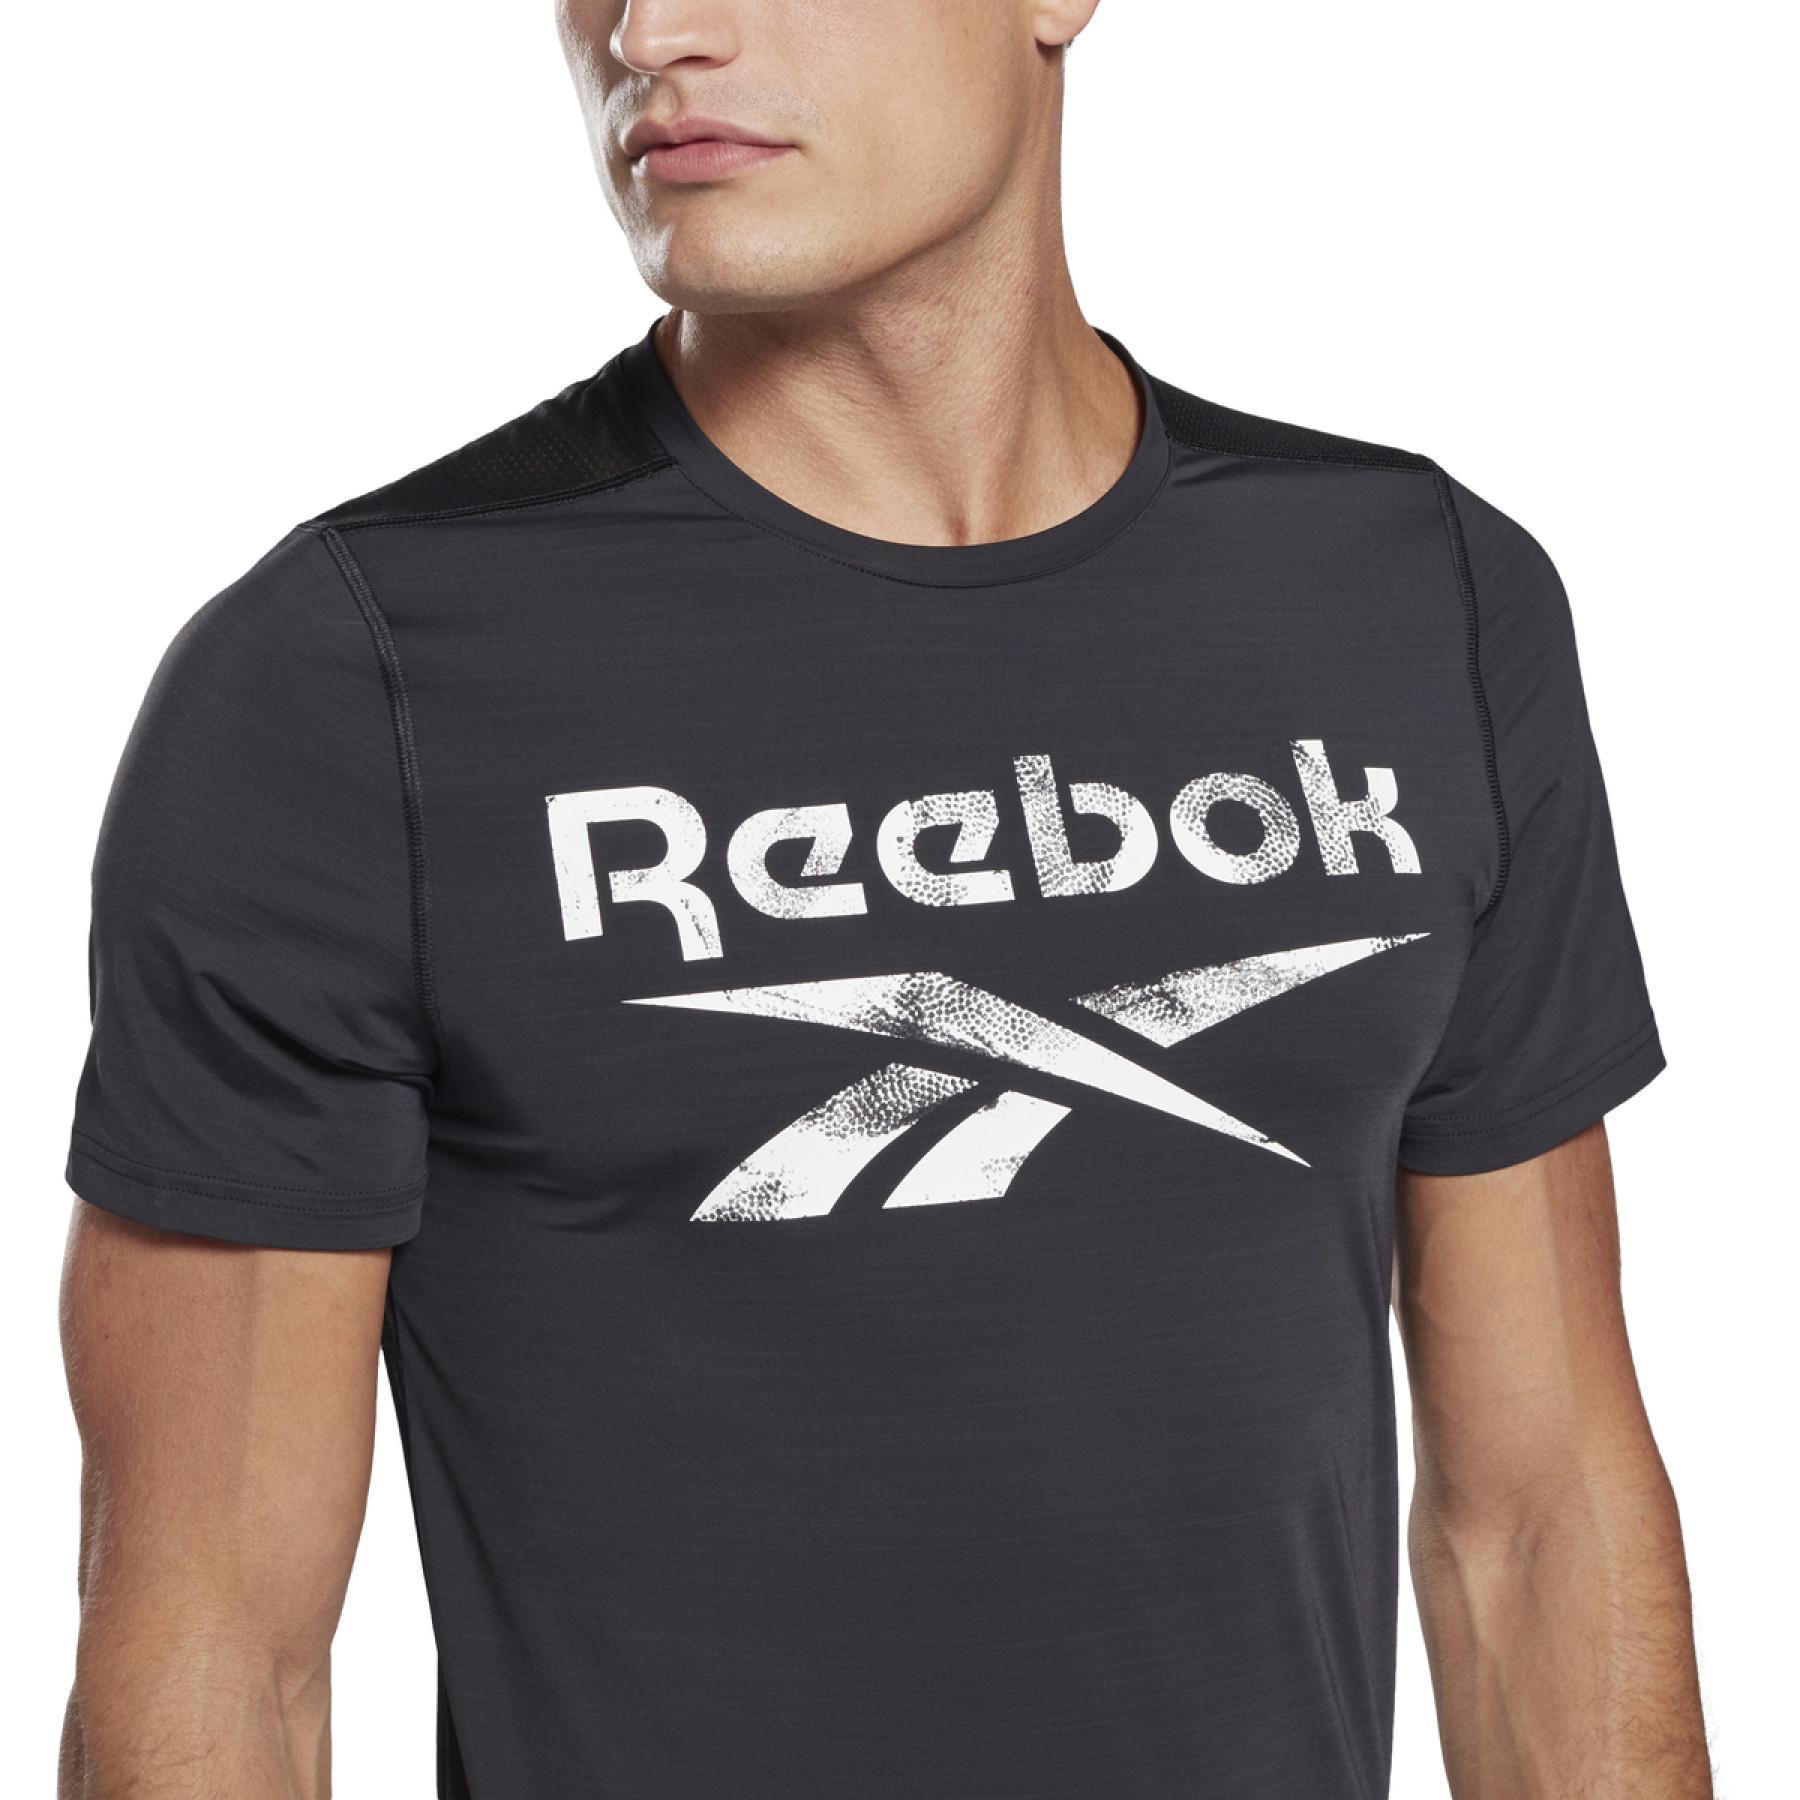 T-shirt Reebok Workout Ready Activchill